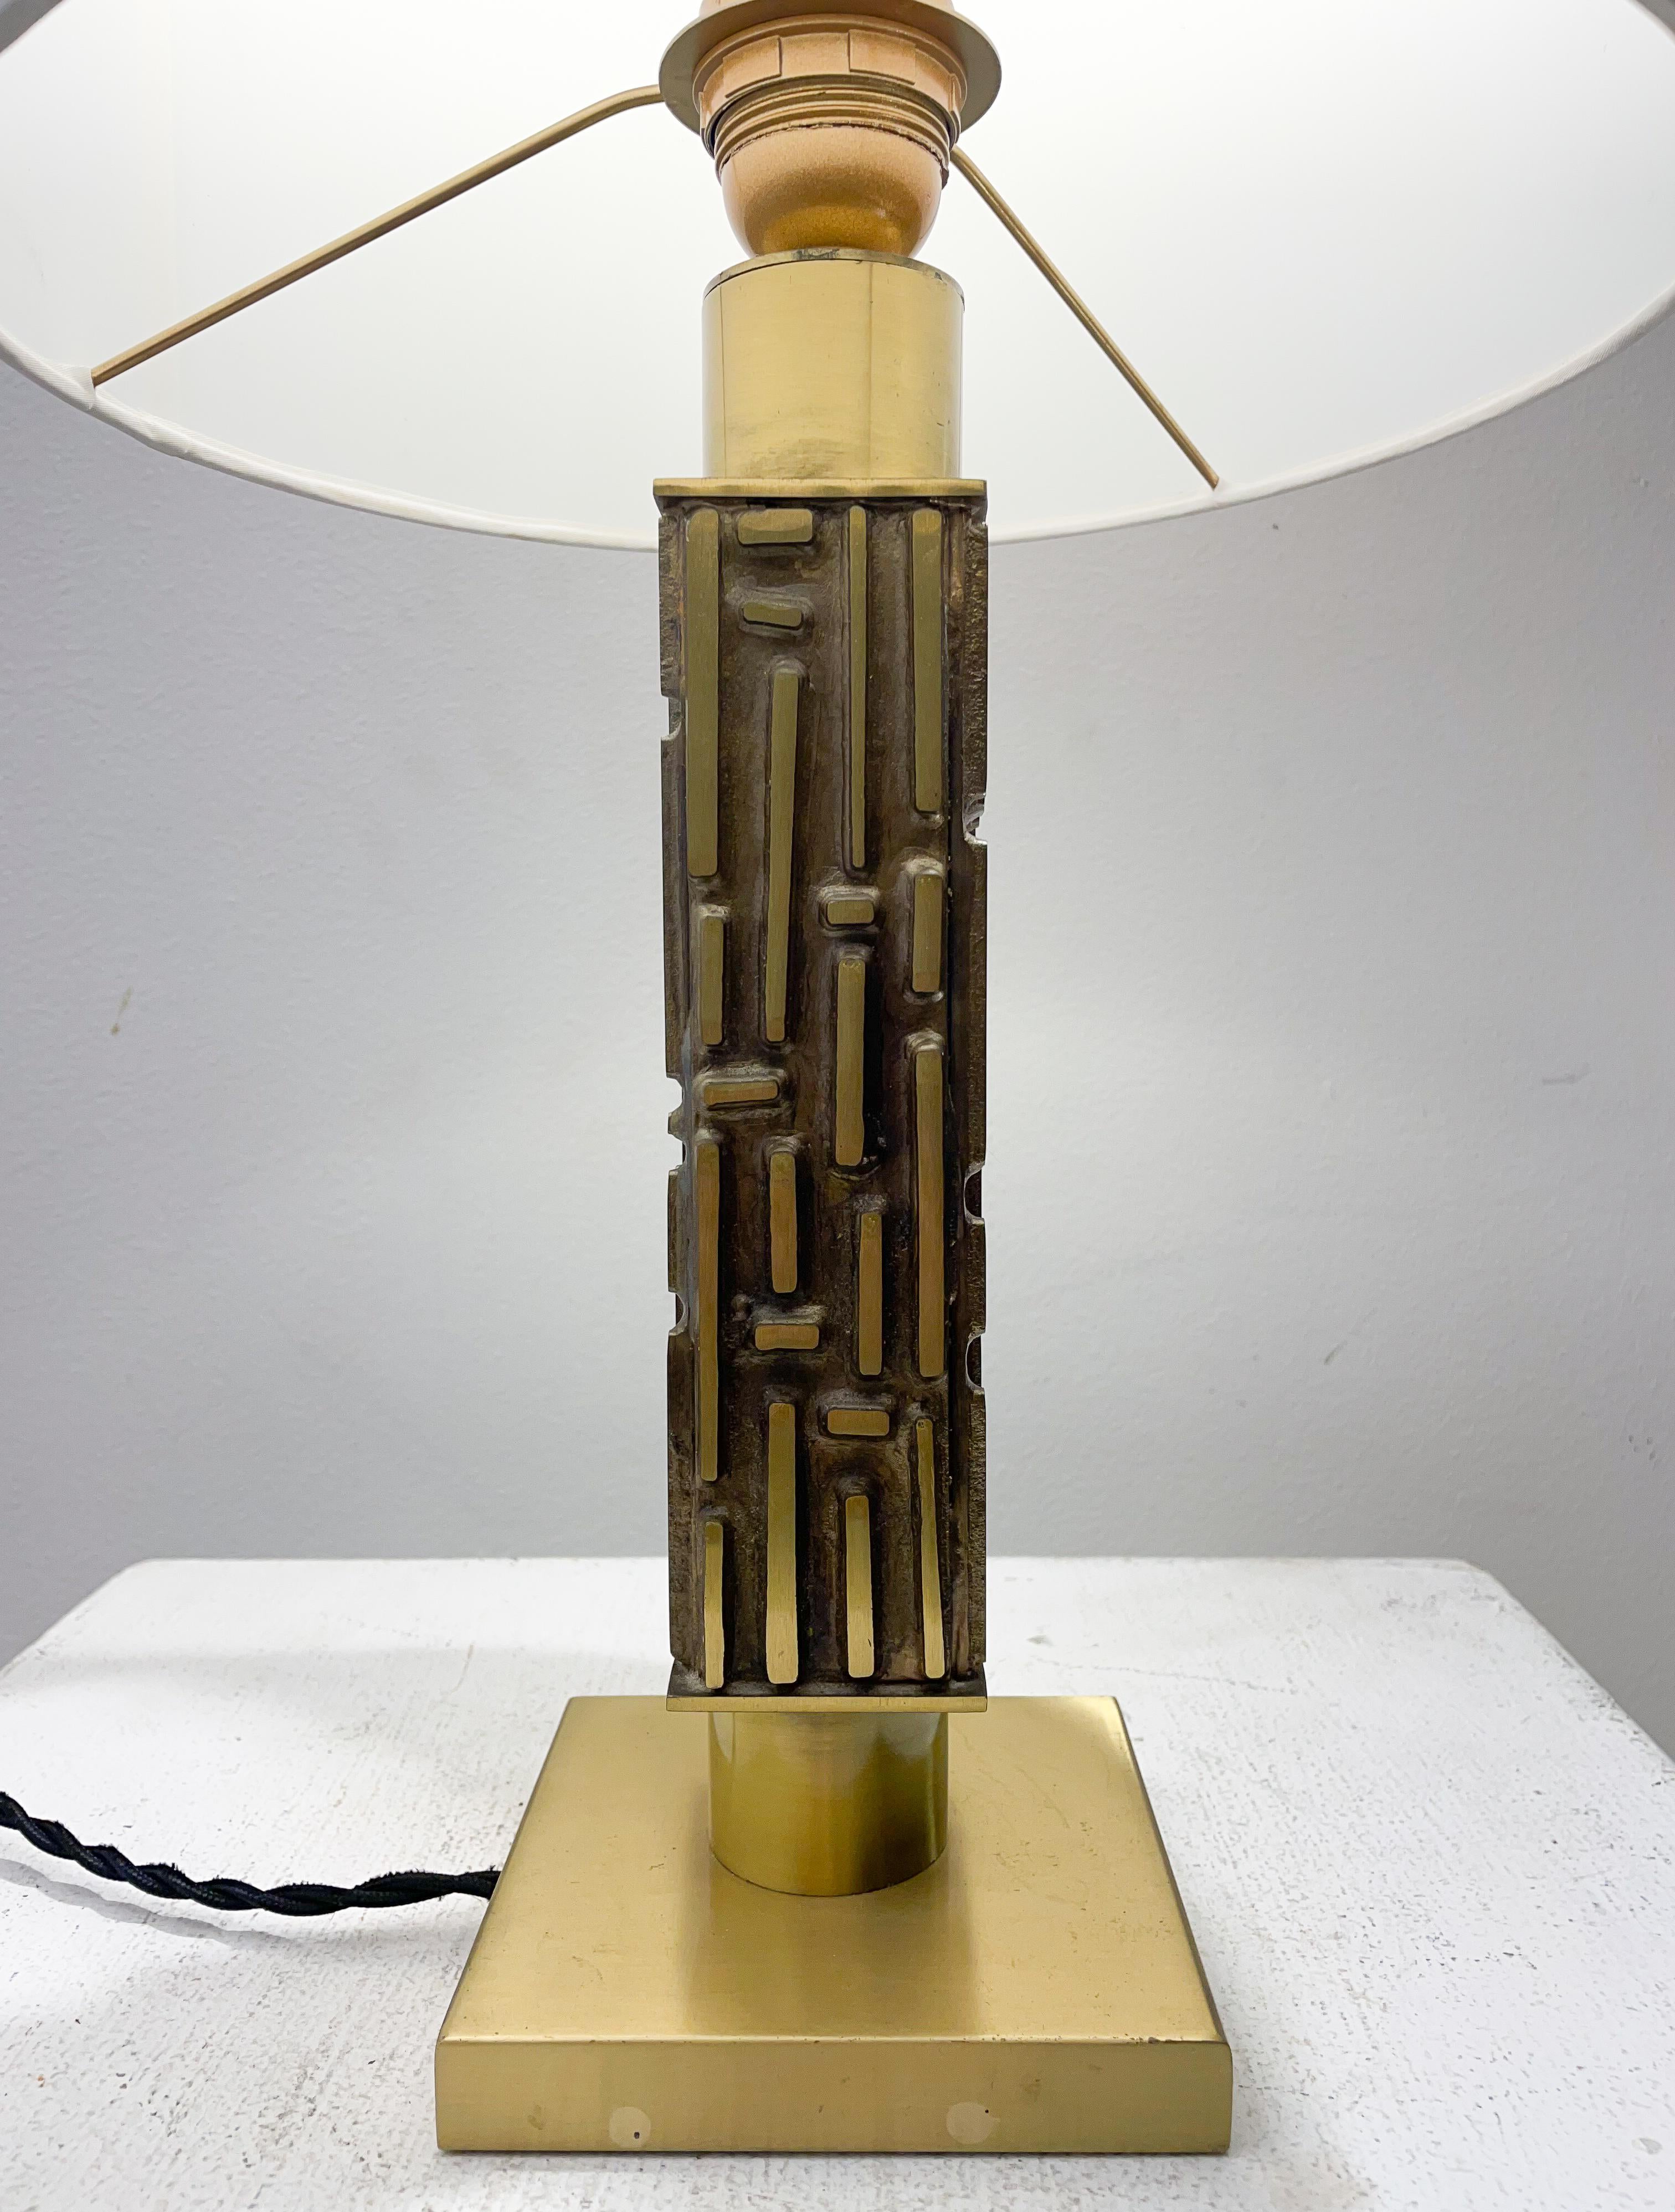 Mid-Century-Tischlampe aus Messing und Bronze von Luciano Frigerio, Italien, 1970er Jahre

Neuer Lampenschirm